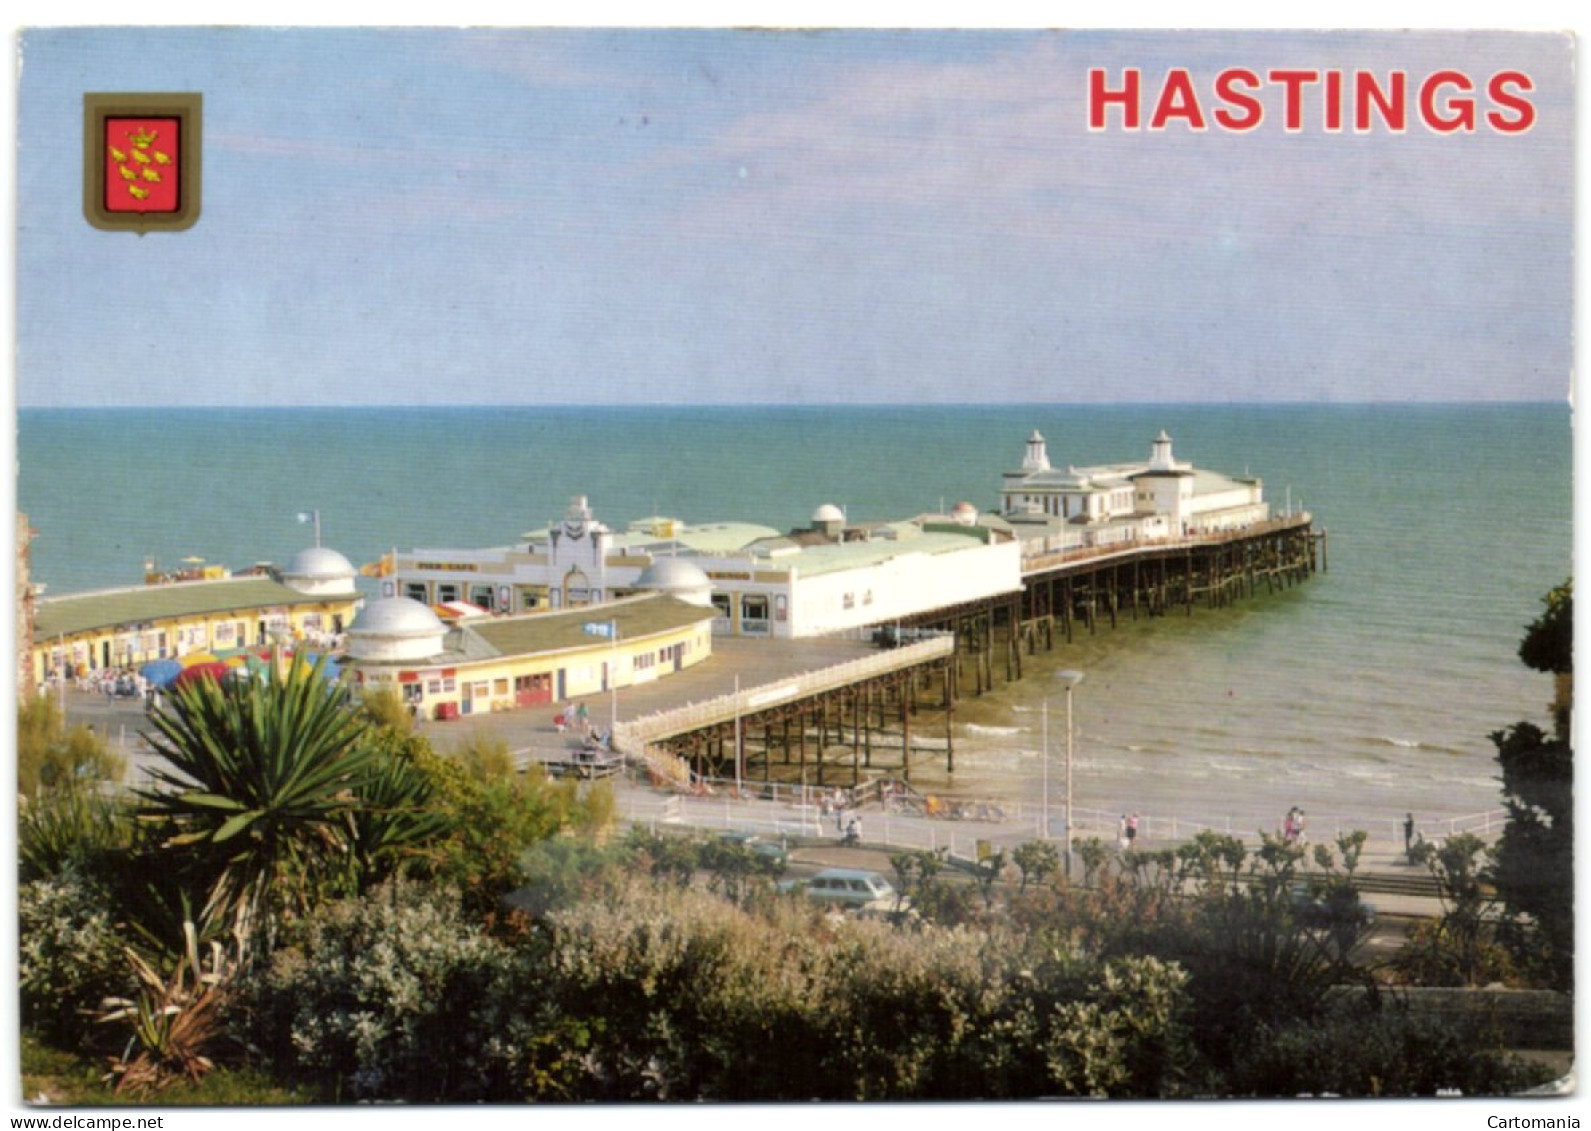 Hastings - The Pier - Hastings